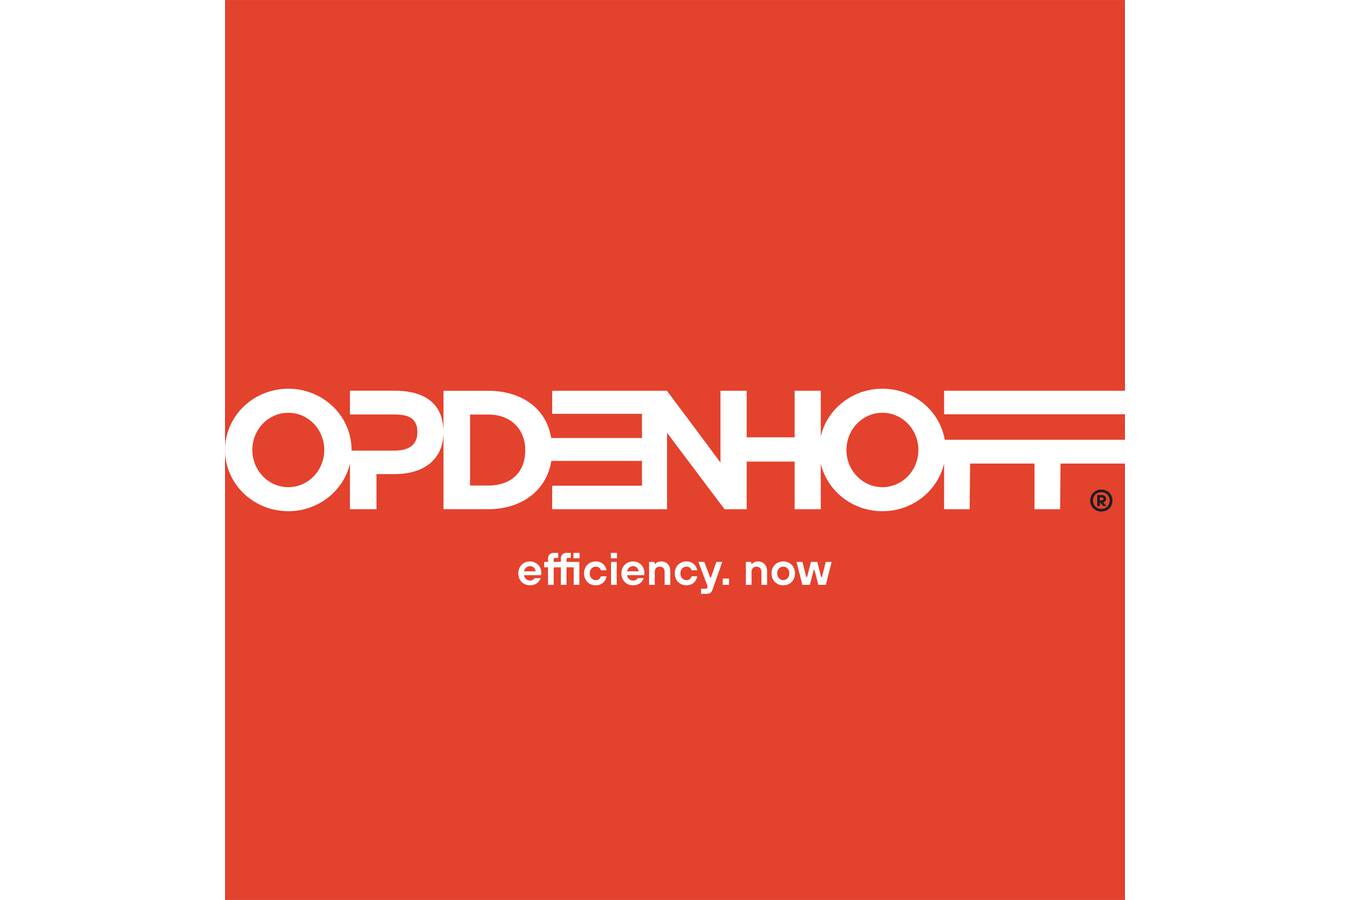 Opdenhoff sucht Elektroniker/-in für Automatisierungstechnik (m/w/d)  Bewirb dich jetzt und starte mit uns zum 01.08.2022